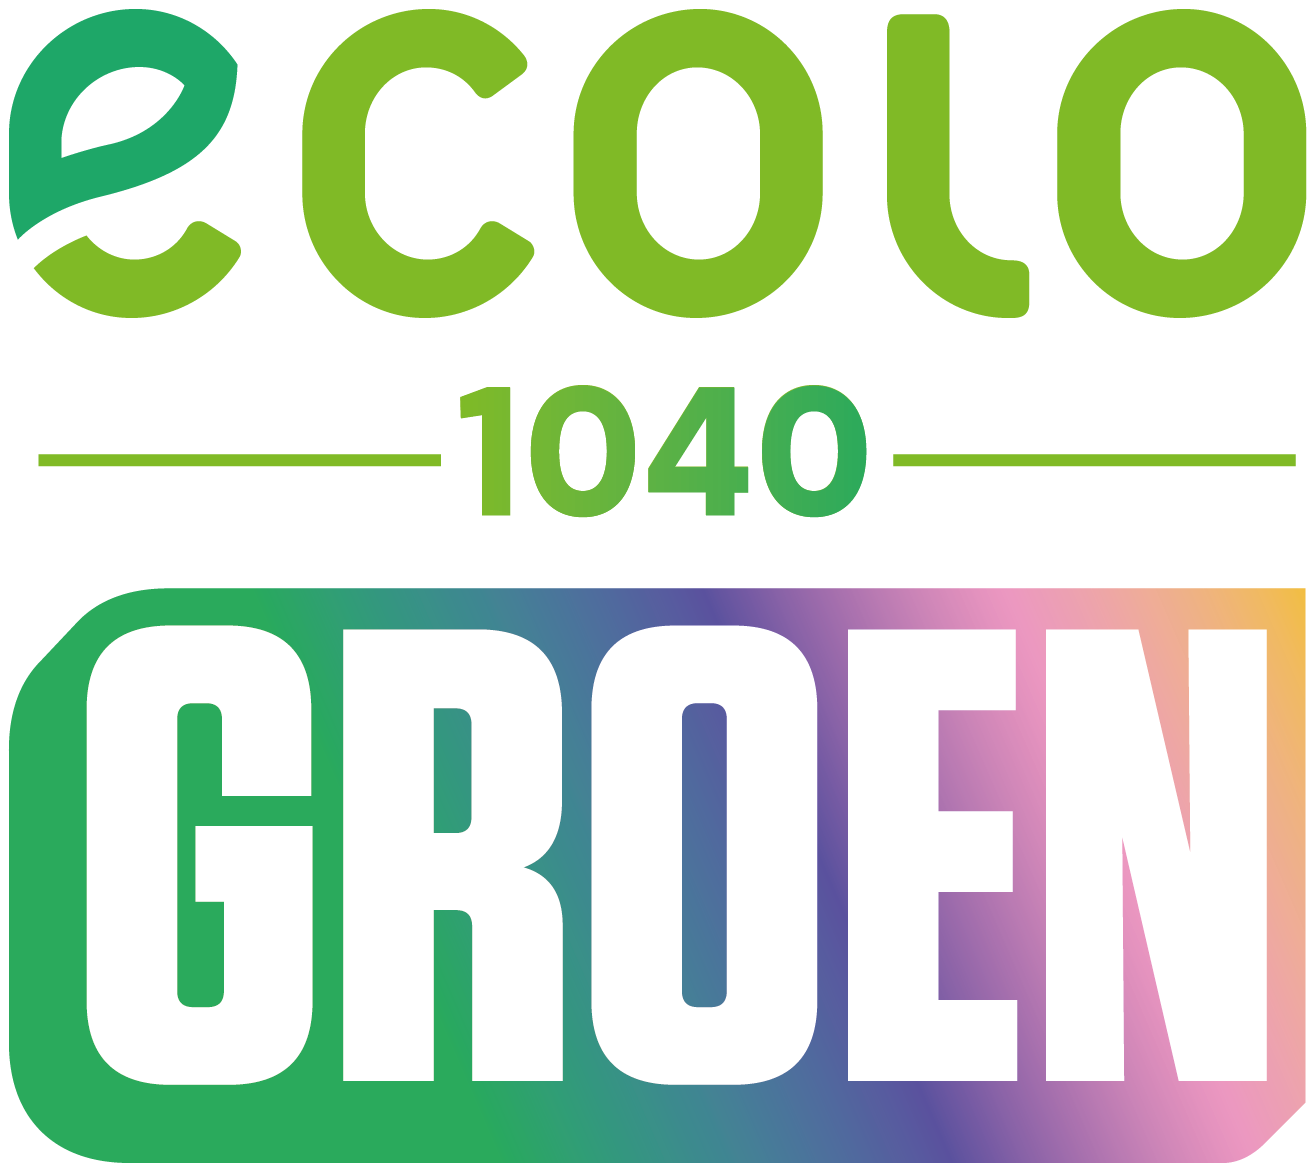 Ecolo-Groen Etterbeek